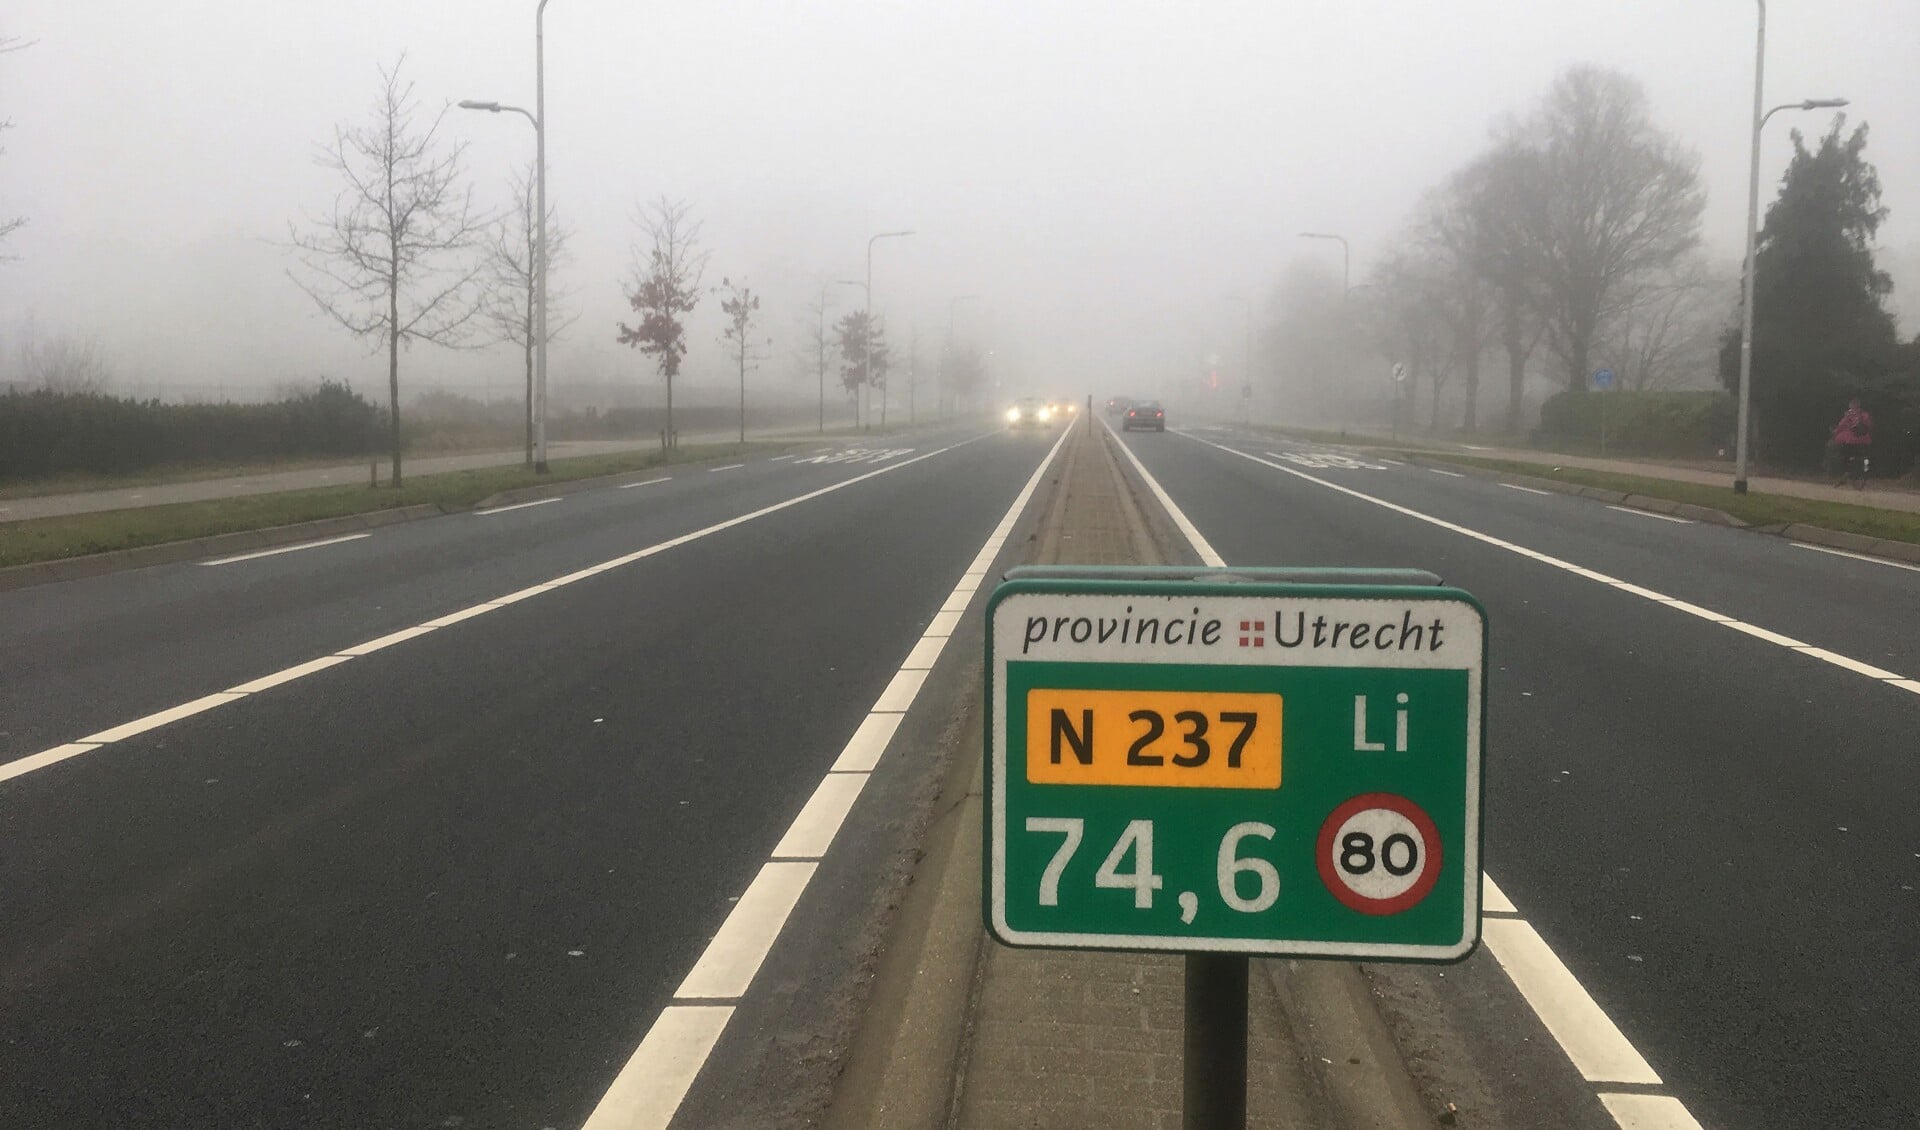  De provinciale weg N237 loopt van de verkeerspleinen De Berekuil bij Utrecht naar de Stichtse Rotonde bij Amersfoort.